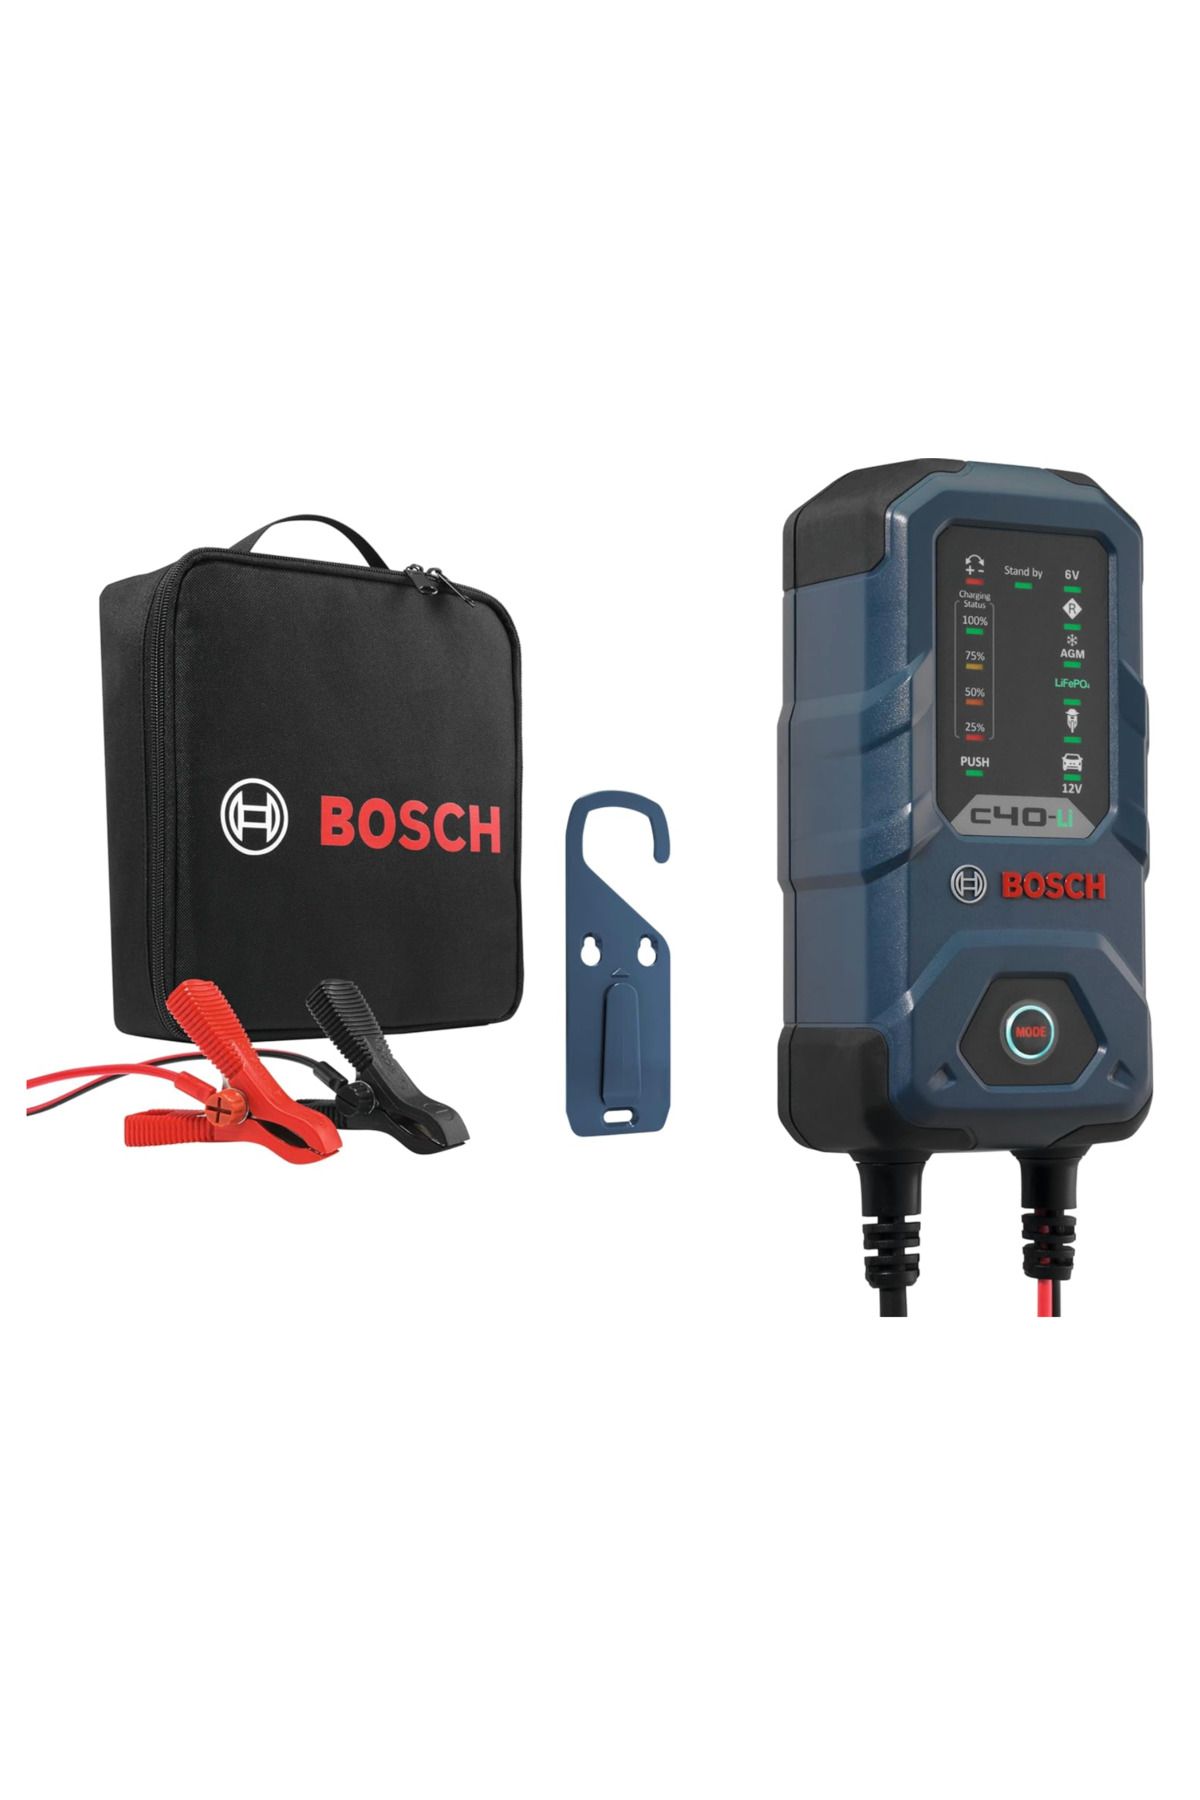 Bosch C40-Lİ Akü Şarj Cihazı 6V / 12V 5A Girişi Gerilimi 14,7V